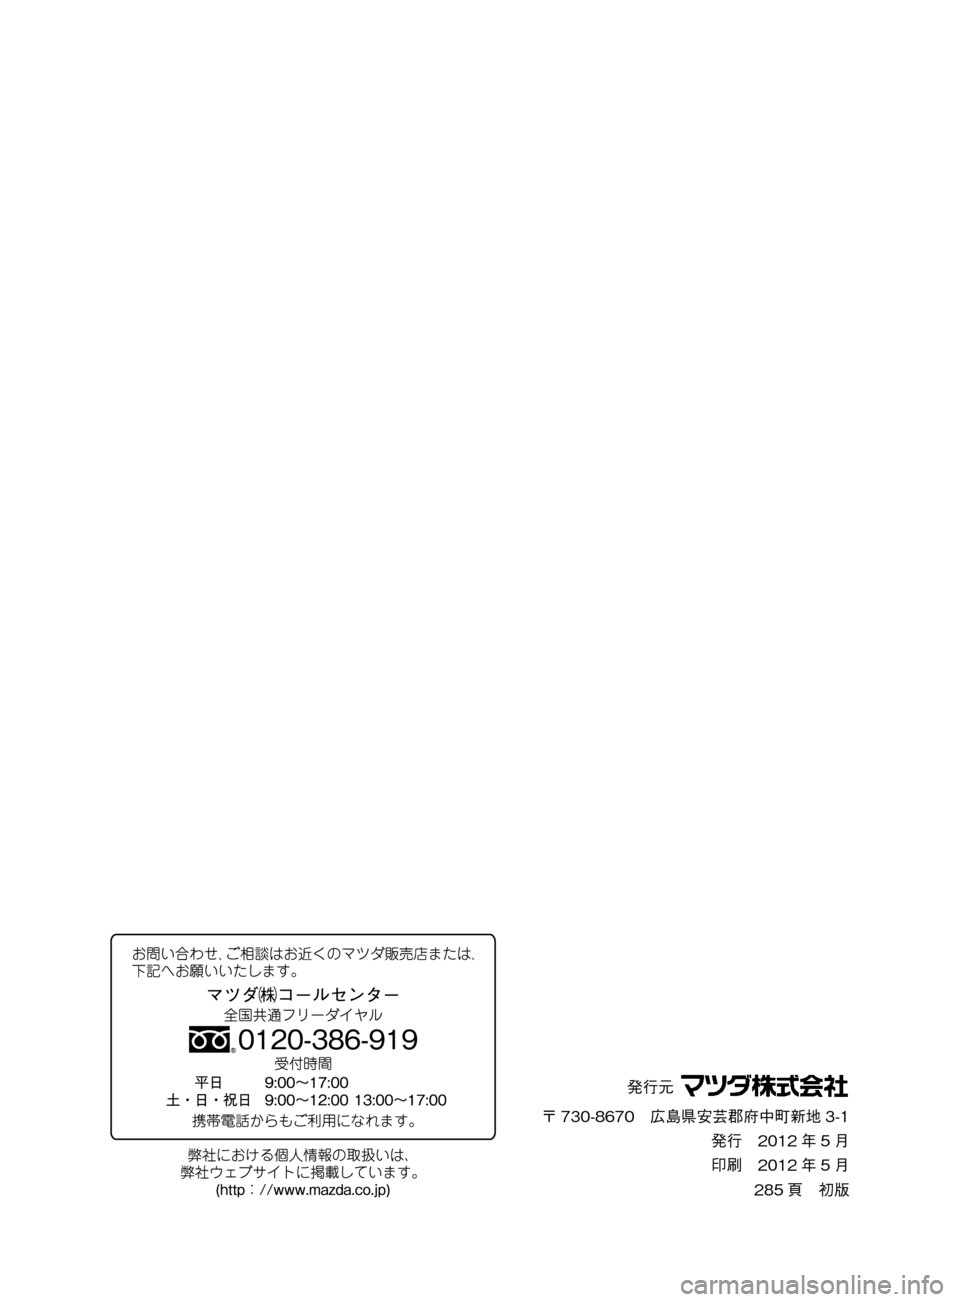 MAZDA MODEL DEMIO 2011  デミオ｜取扱説明書 (in Japanese) ��P�S�N��/�P���% 